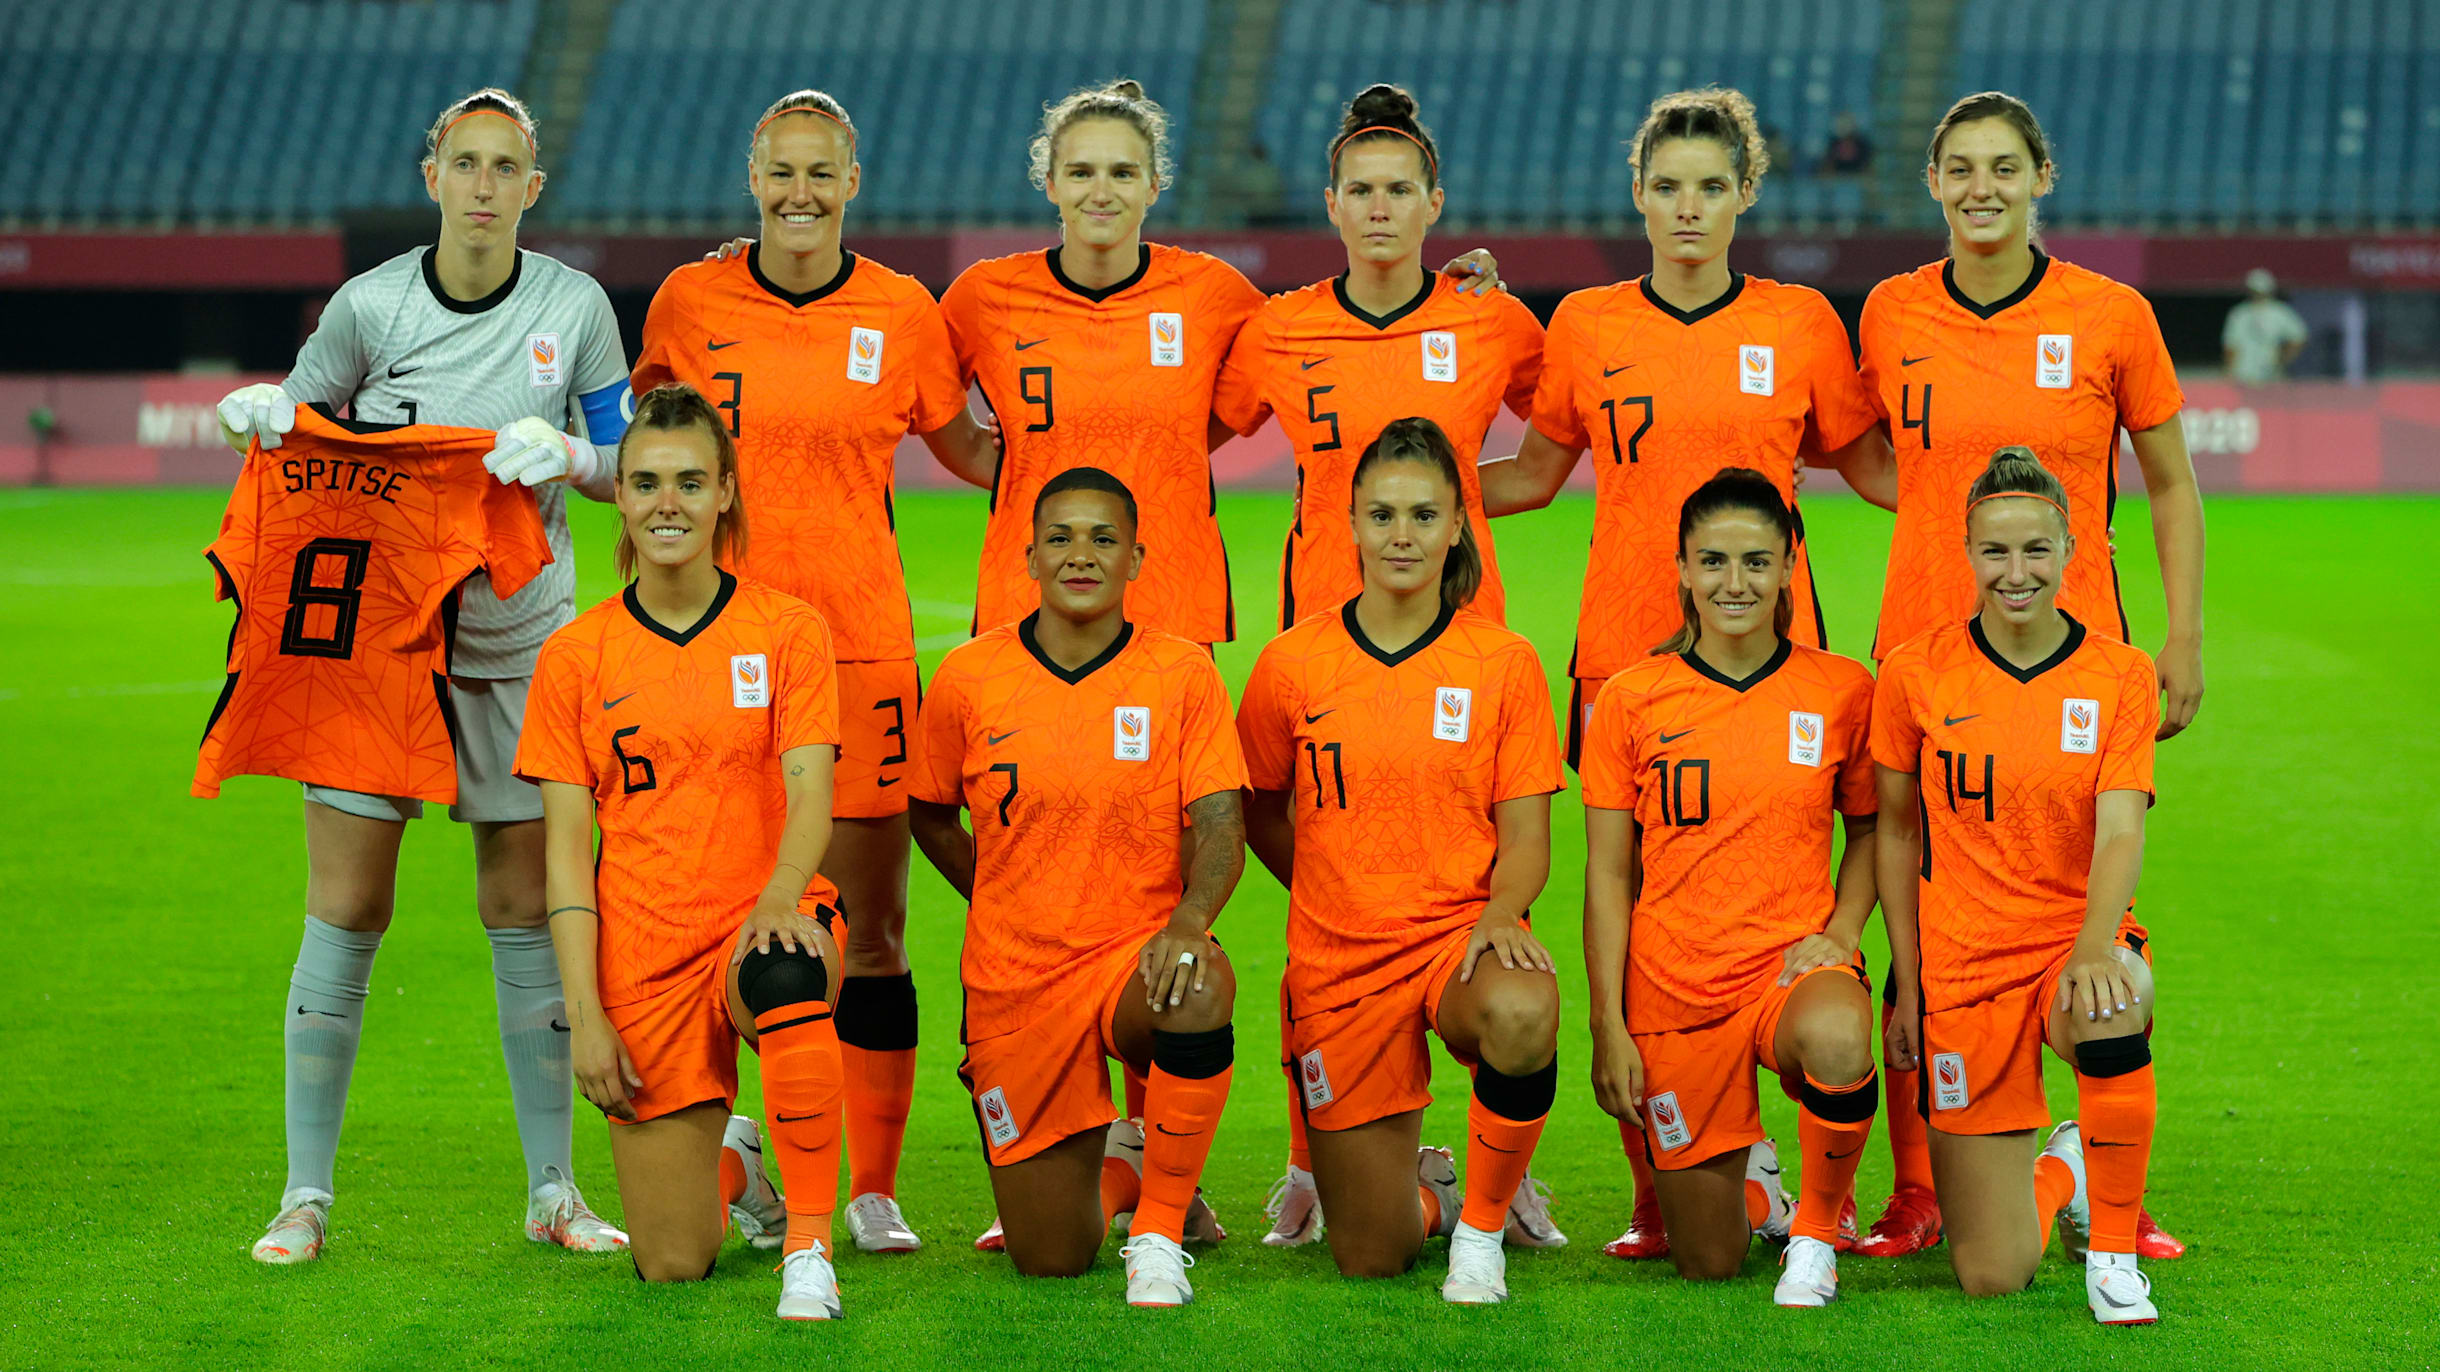 marathon aantrekkelijk Sui How Netherlands women's football team went from minnows to contenders